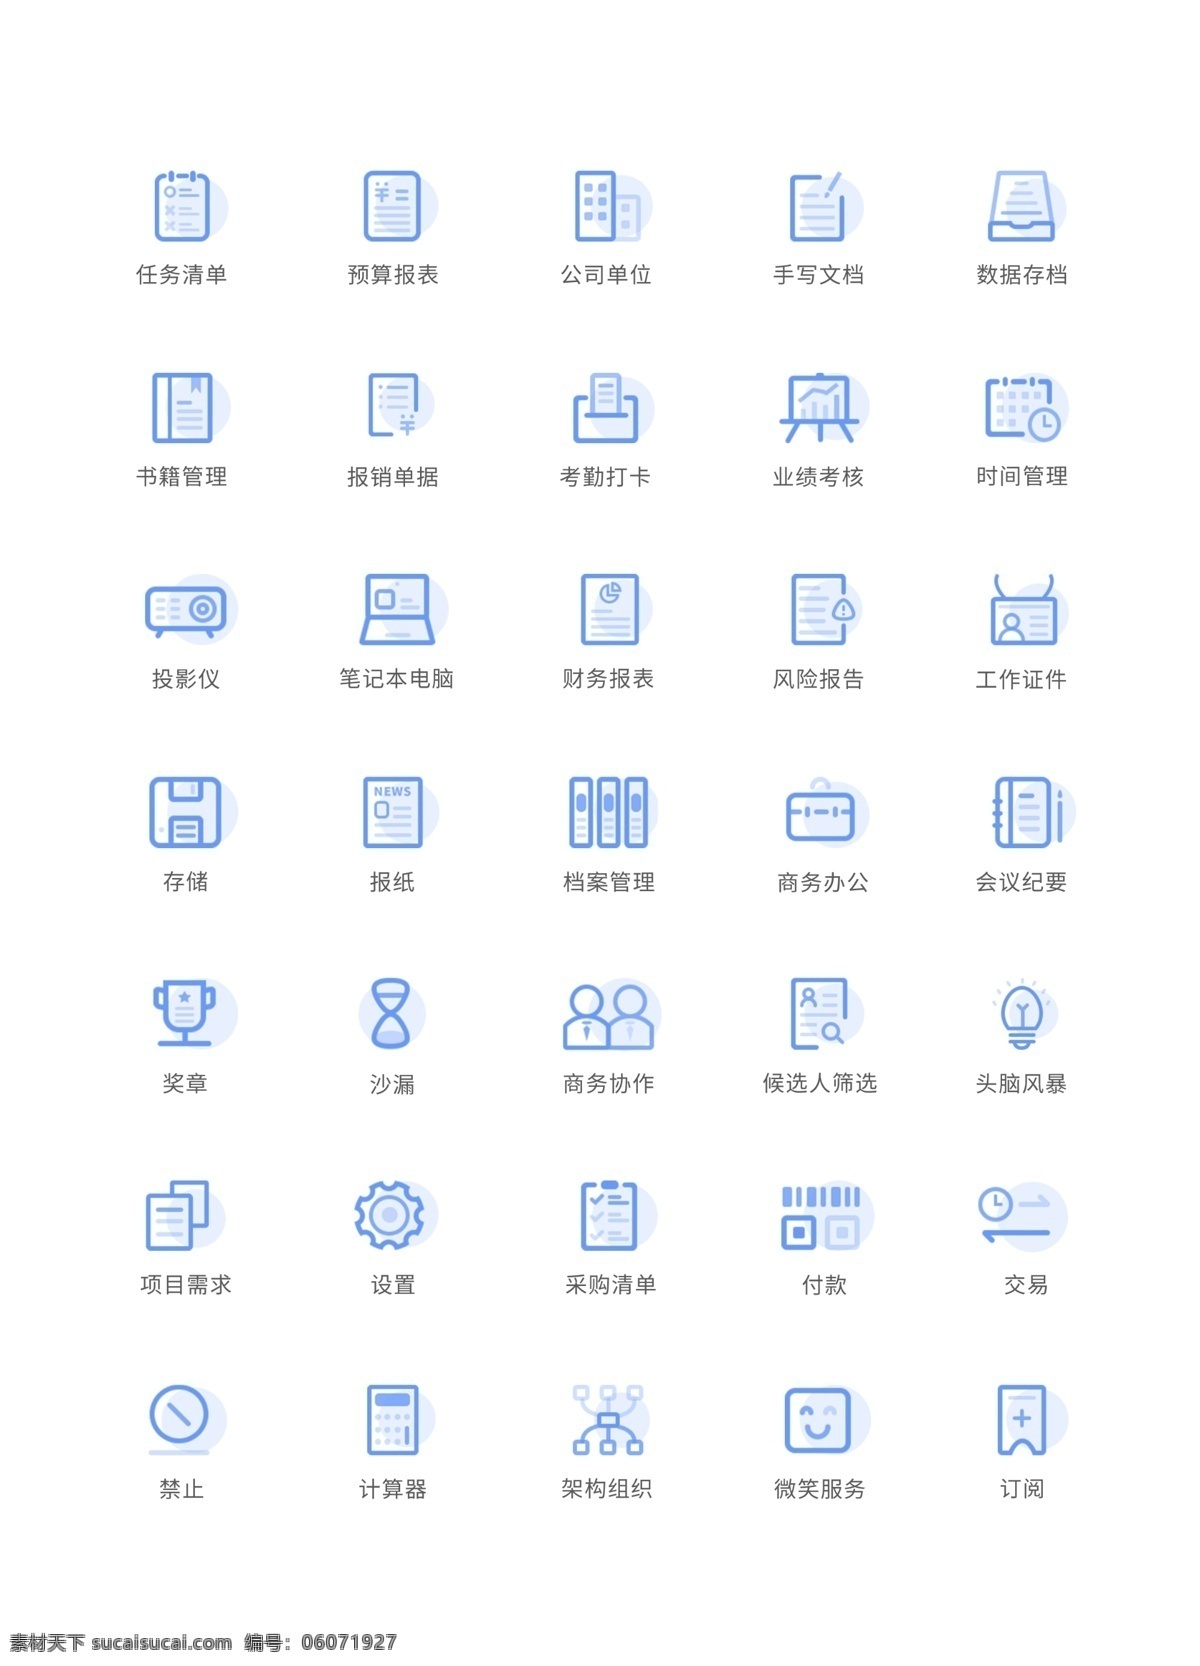 清爽 蓝色 金融 商务 icon 蓝色icon 商务icon 商务图标 清爽蓝色图标